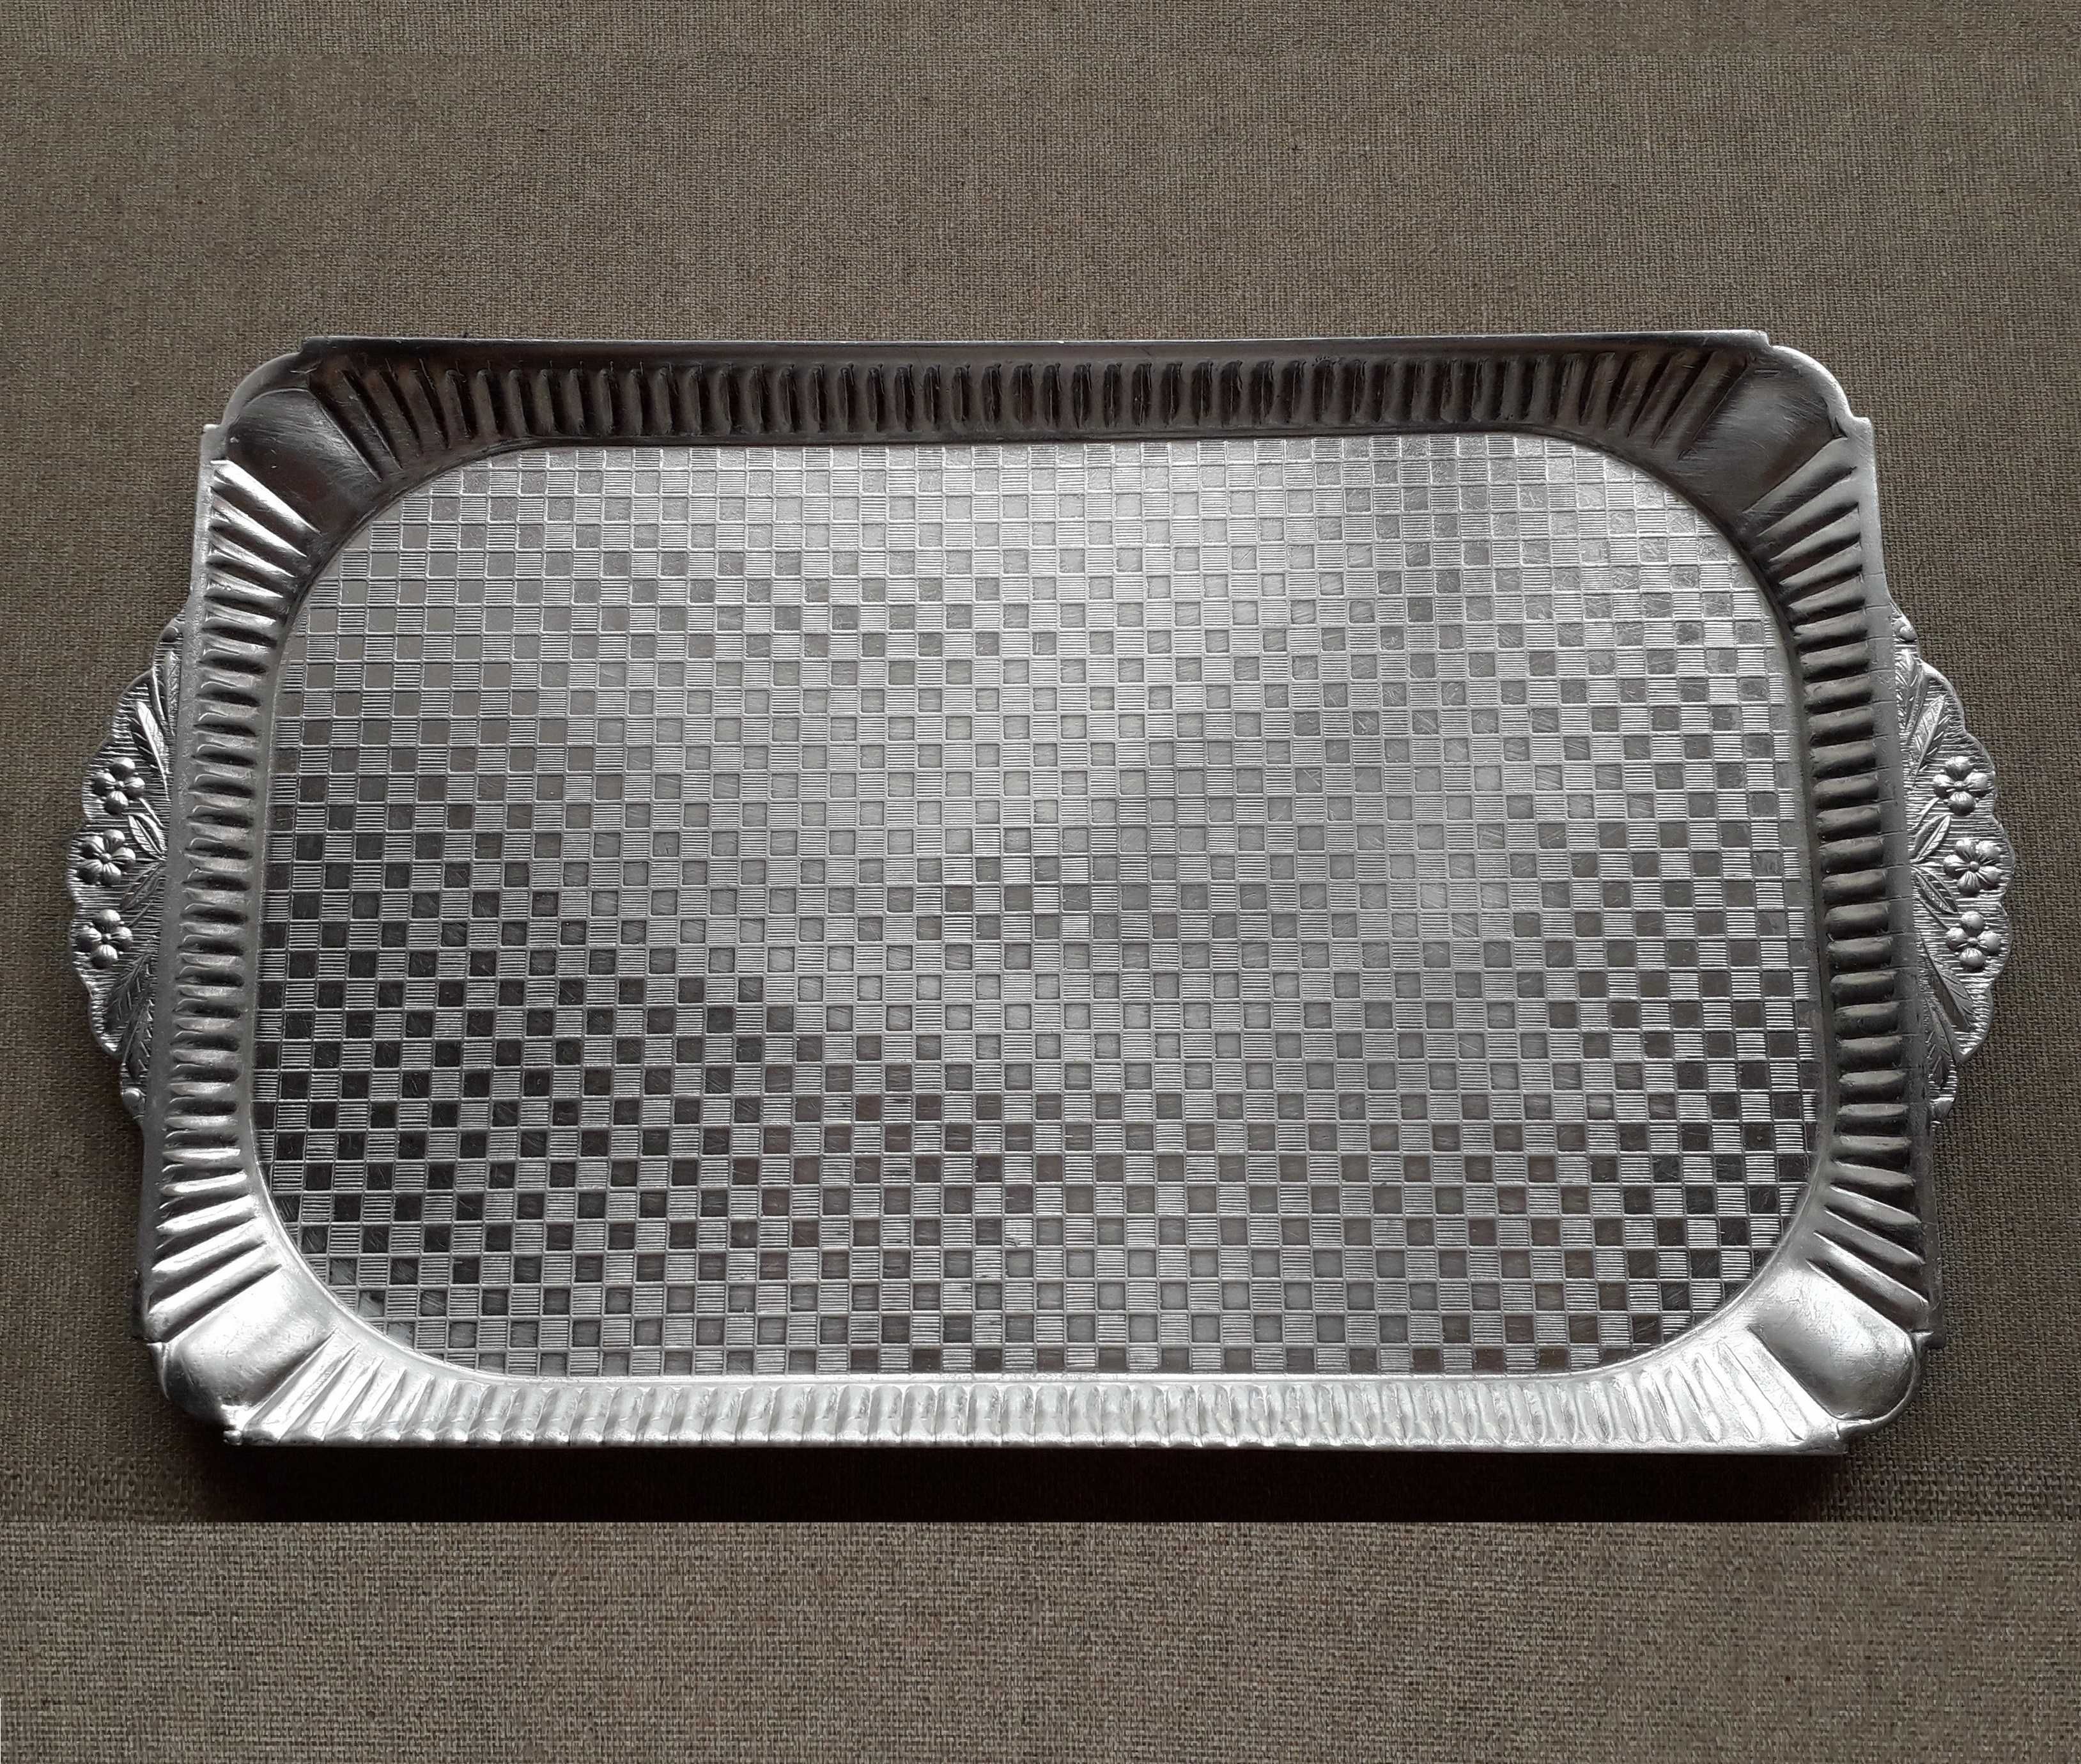 Алюминиевый поднос СССР, стакан марганцевое стекло.